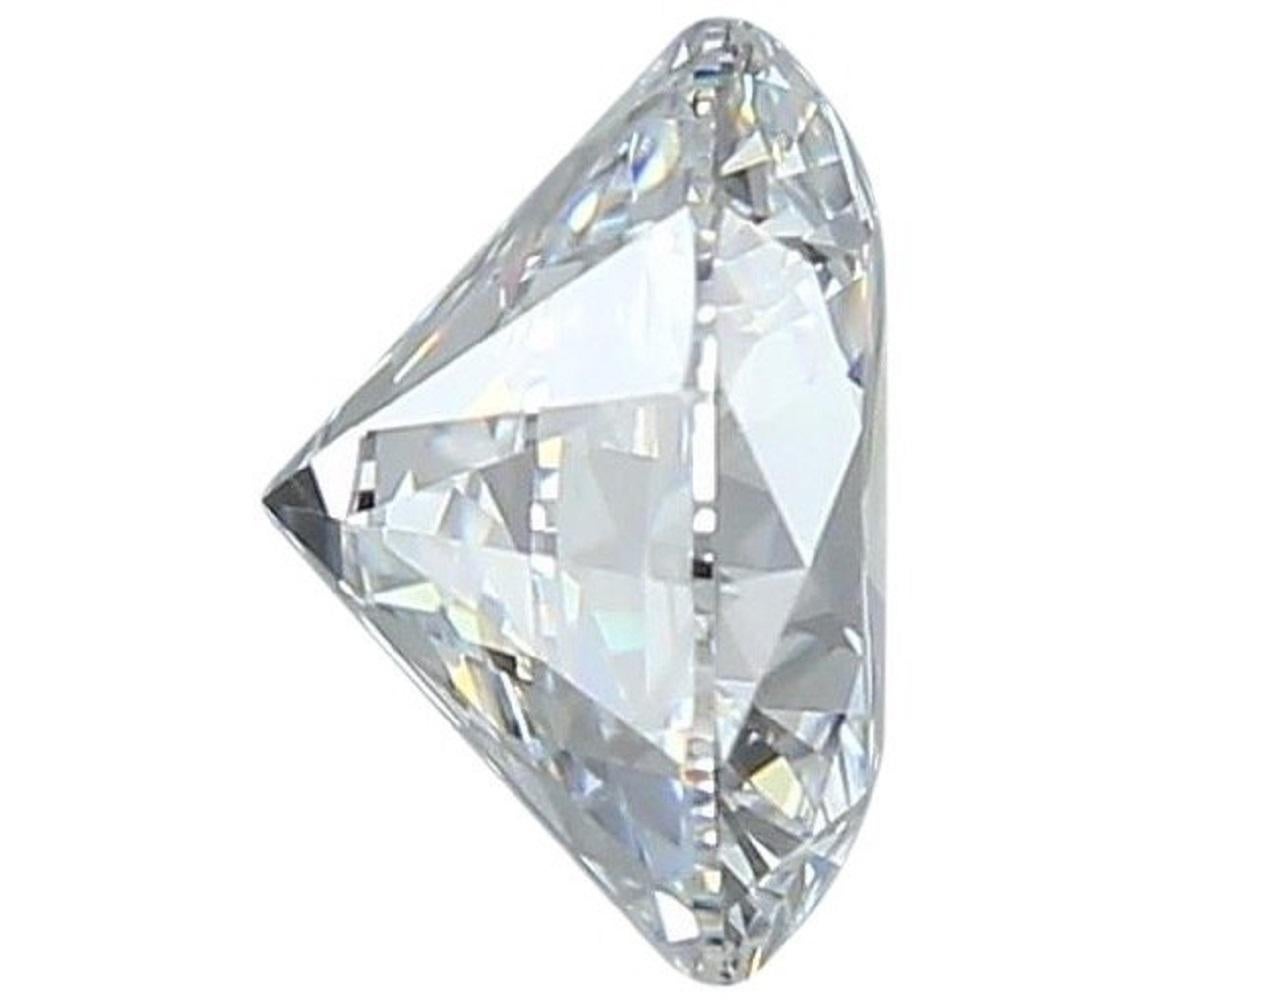 1 diamant brillant rond naturel sans défaut de 0,52 carat D IF avec une triple coupe excellente. Il bénéficie du meilleur classement possible en termes de couleur et de clarté. Ce diamant est accompagné d'un certificat IGI et d'un numéro